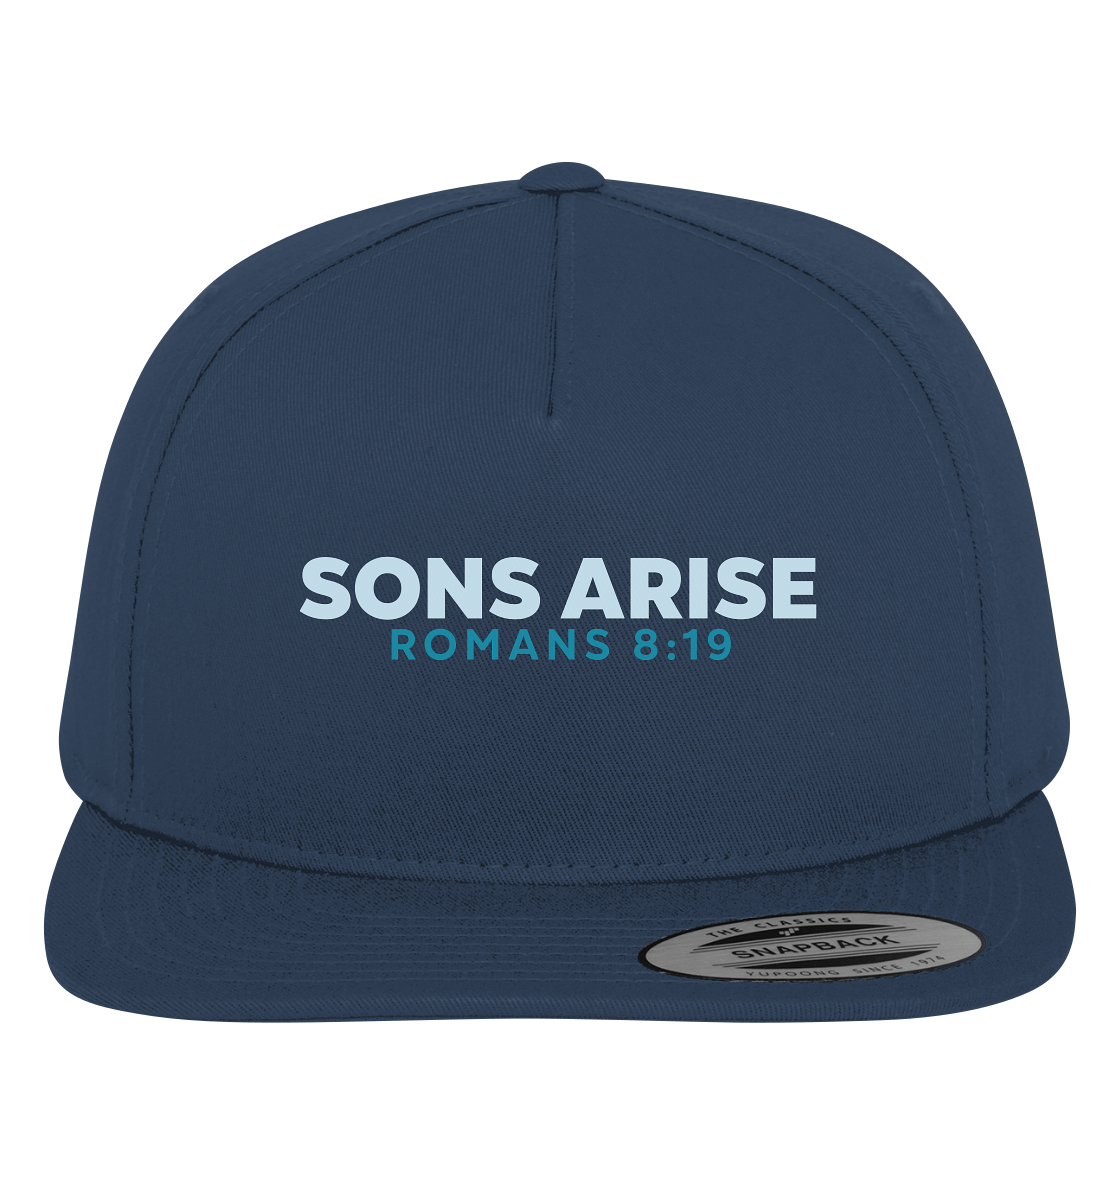 Sons Arise - Söhne Gottes - Premium Snapback